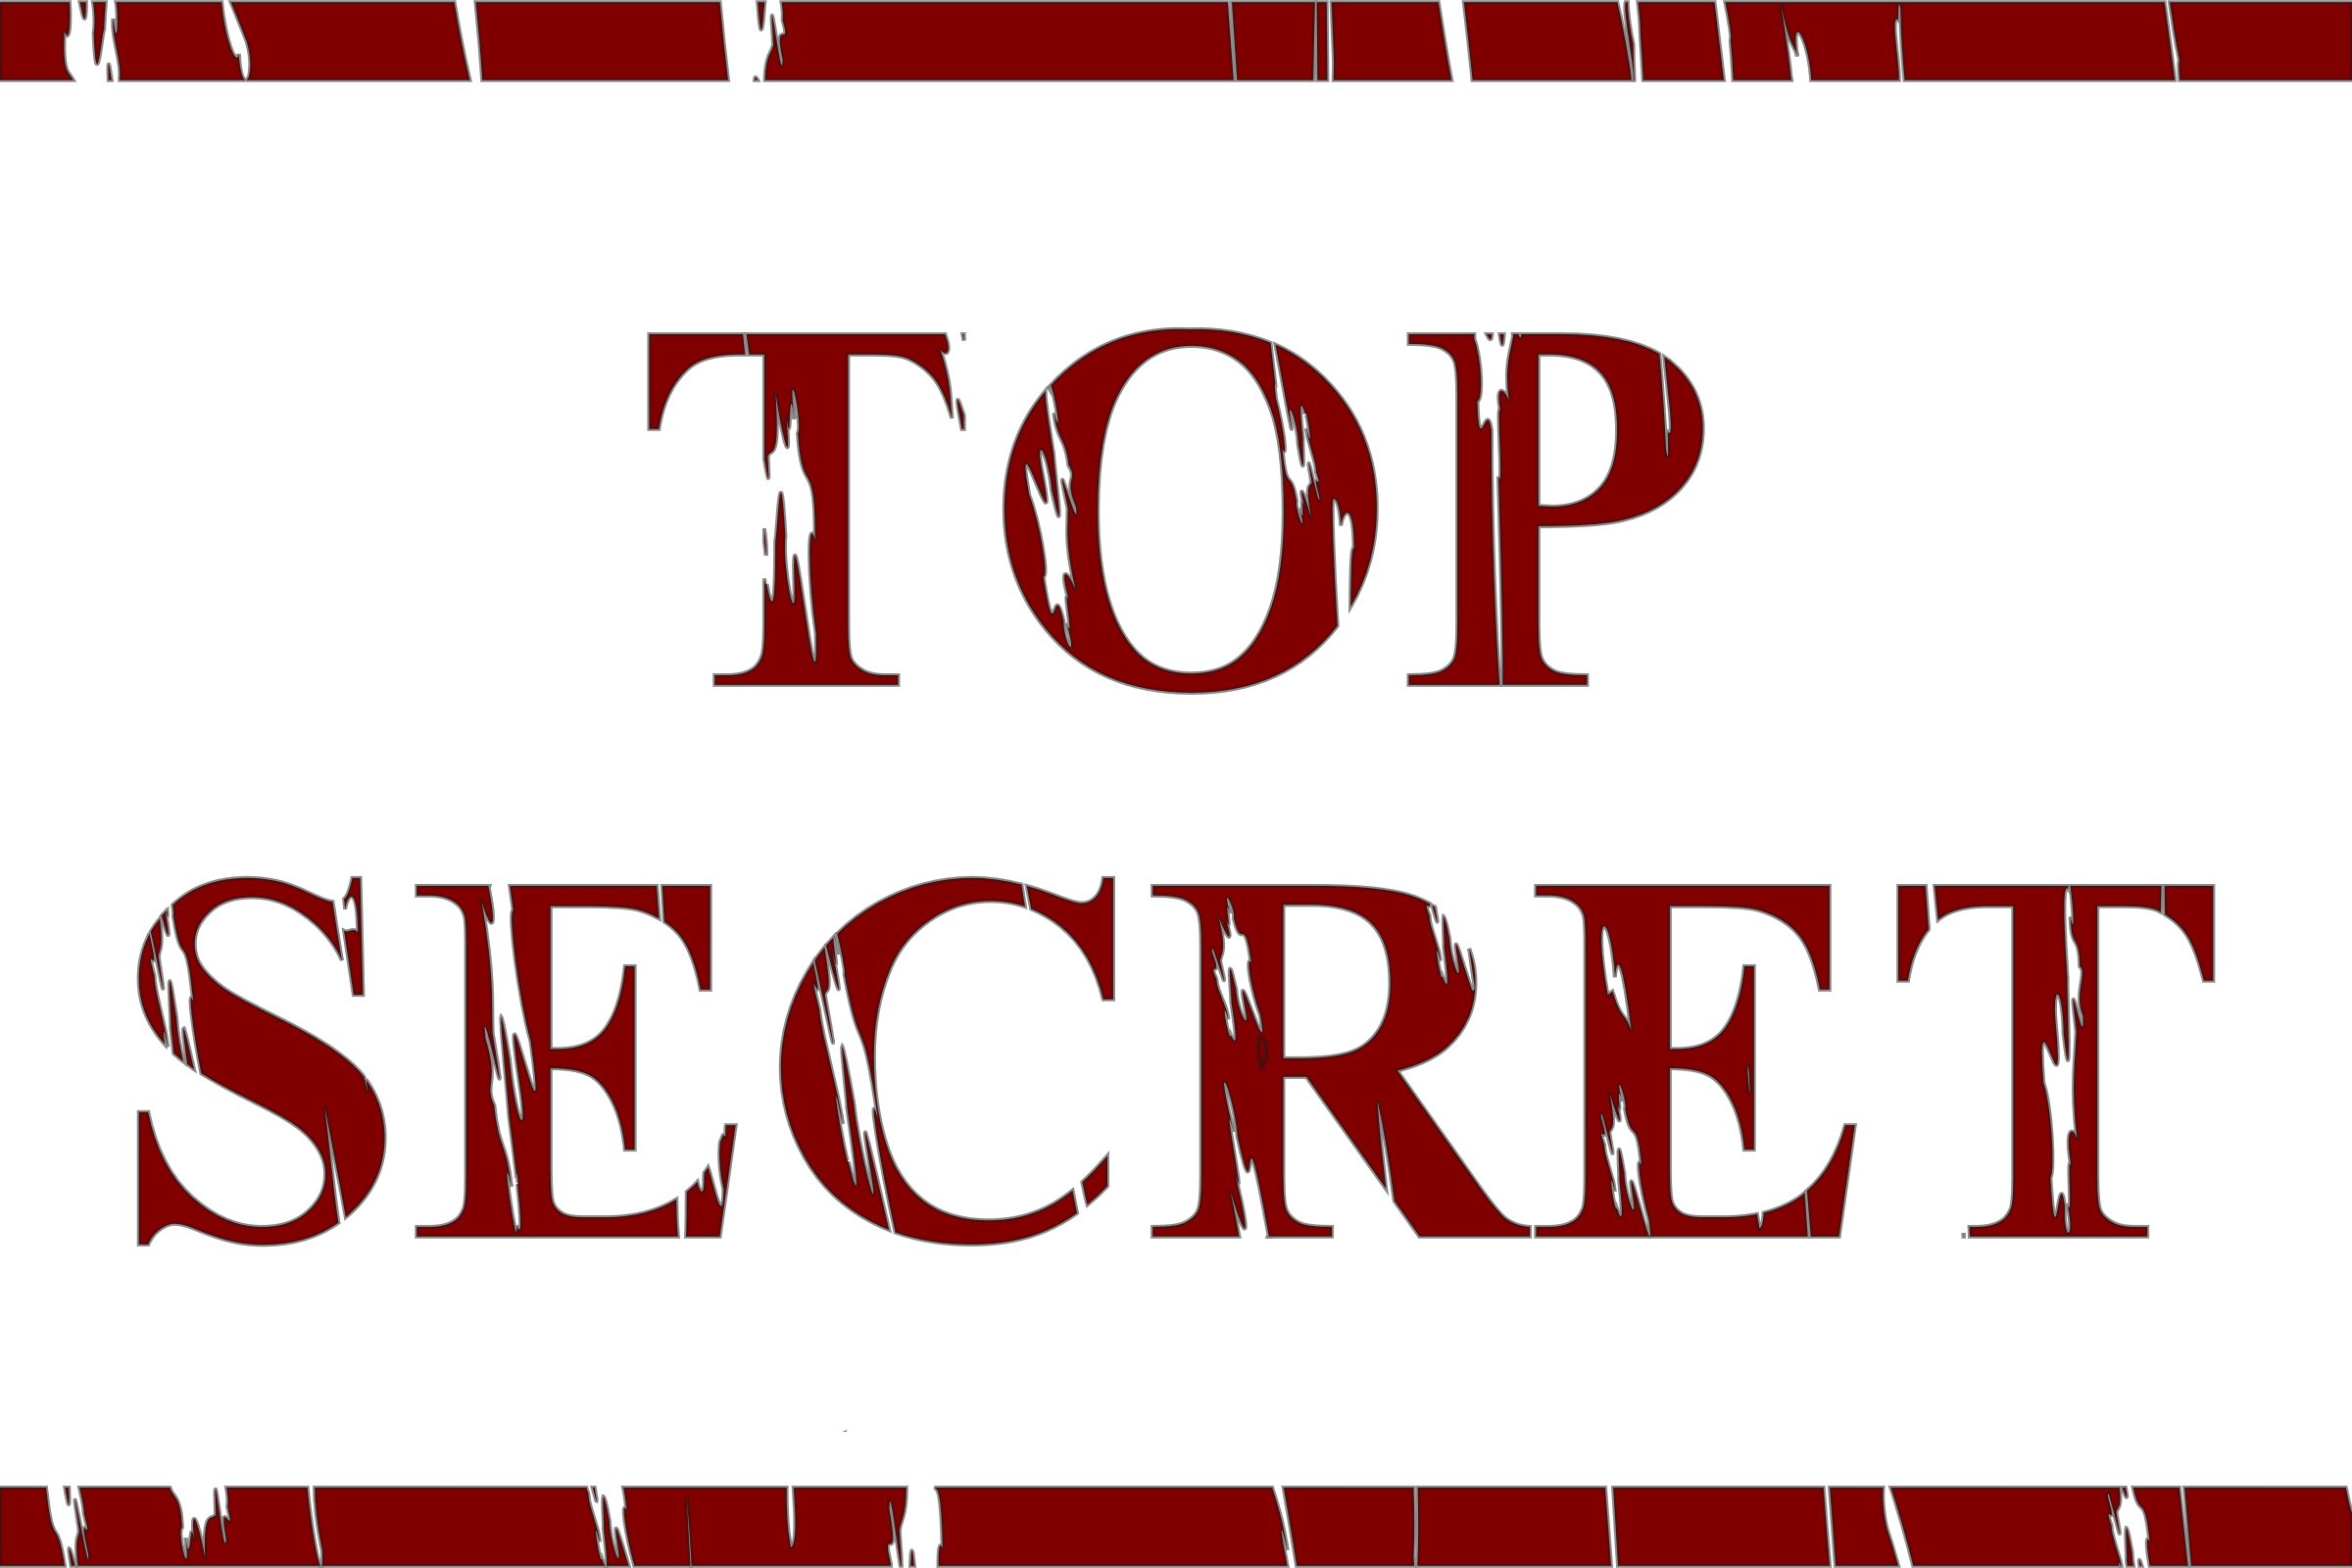 secret clipart spy